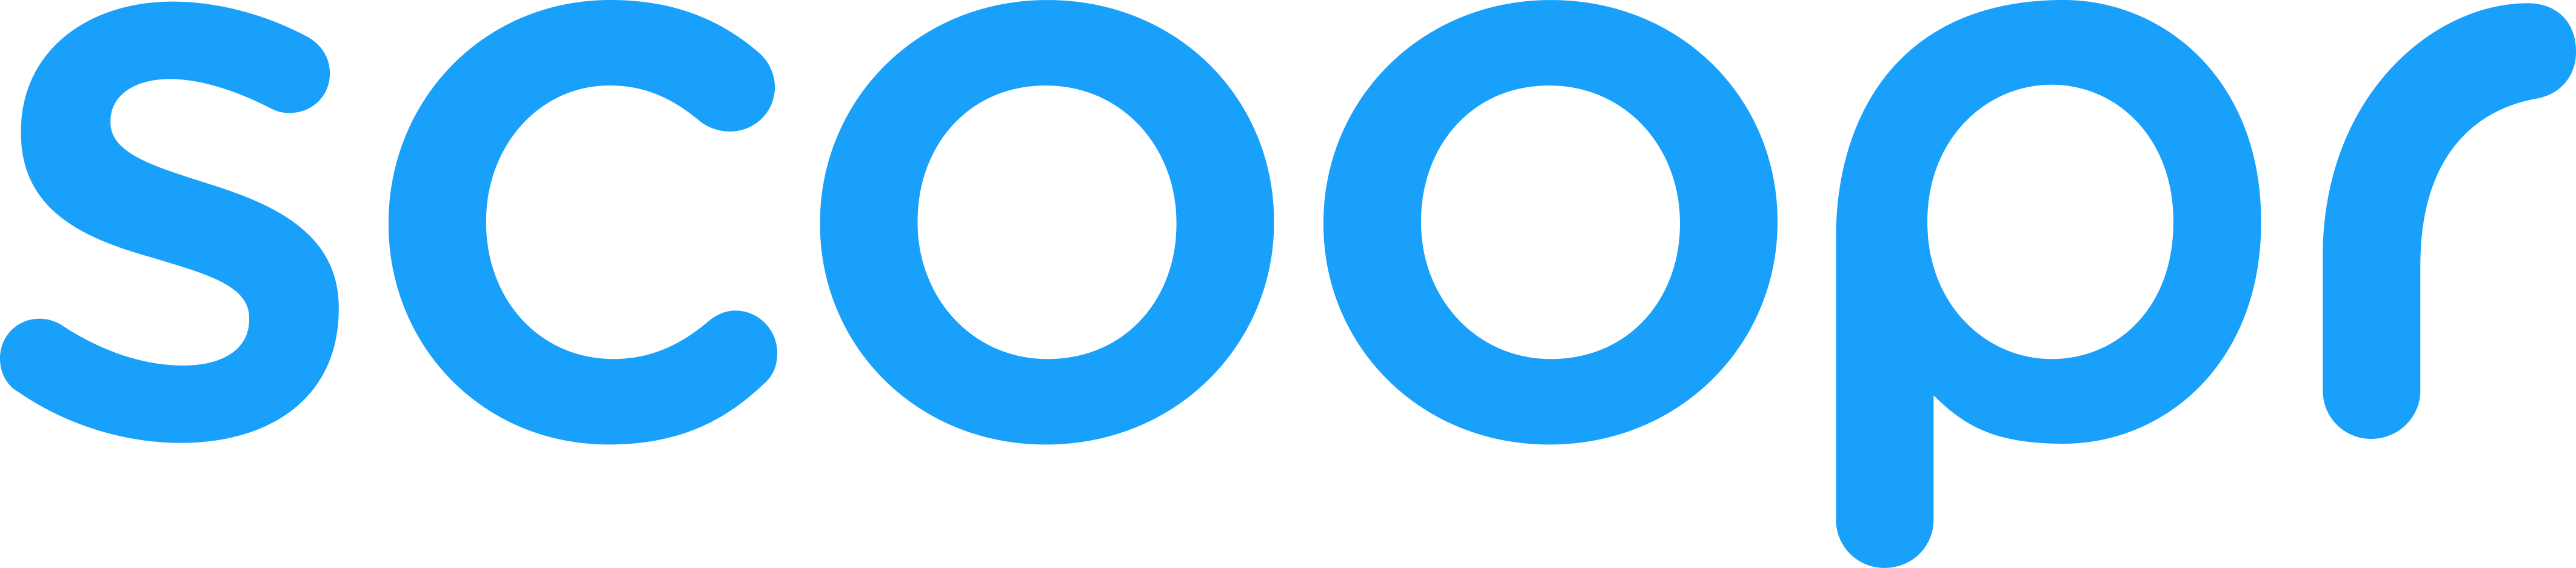 Scoopr logo